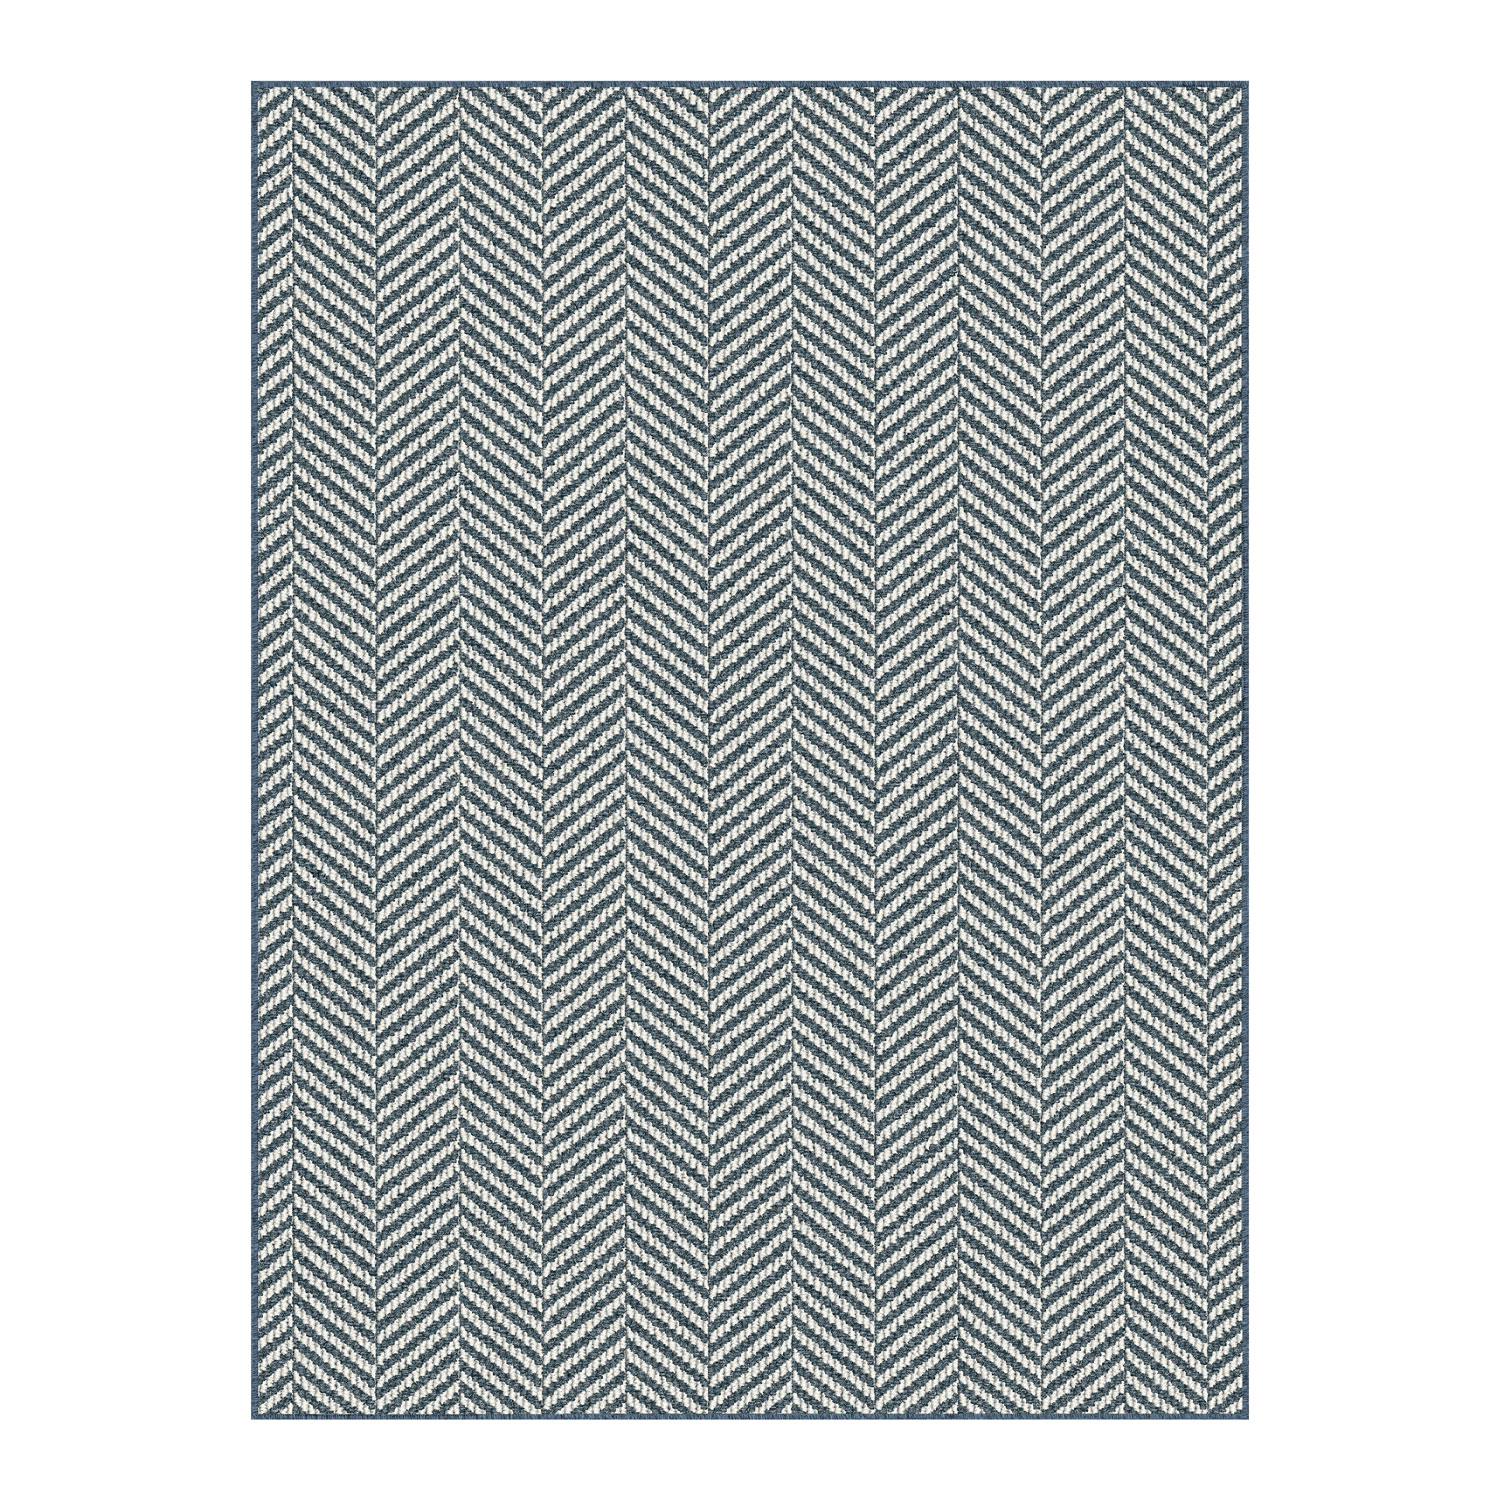 Collection TRIDENT, tapis, bleu-gris, 3'x4'